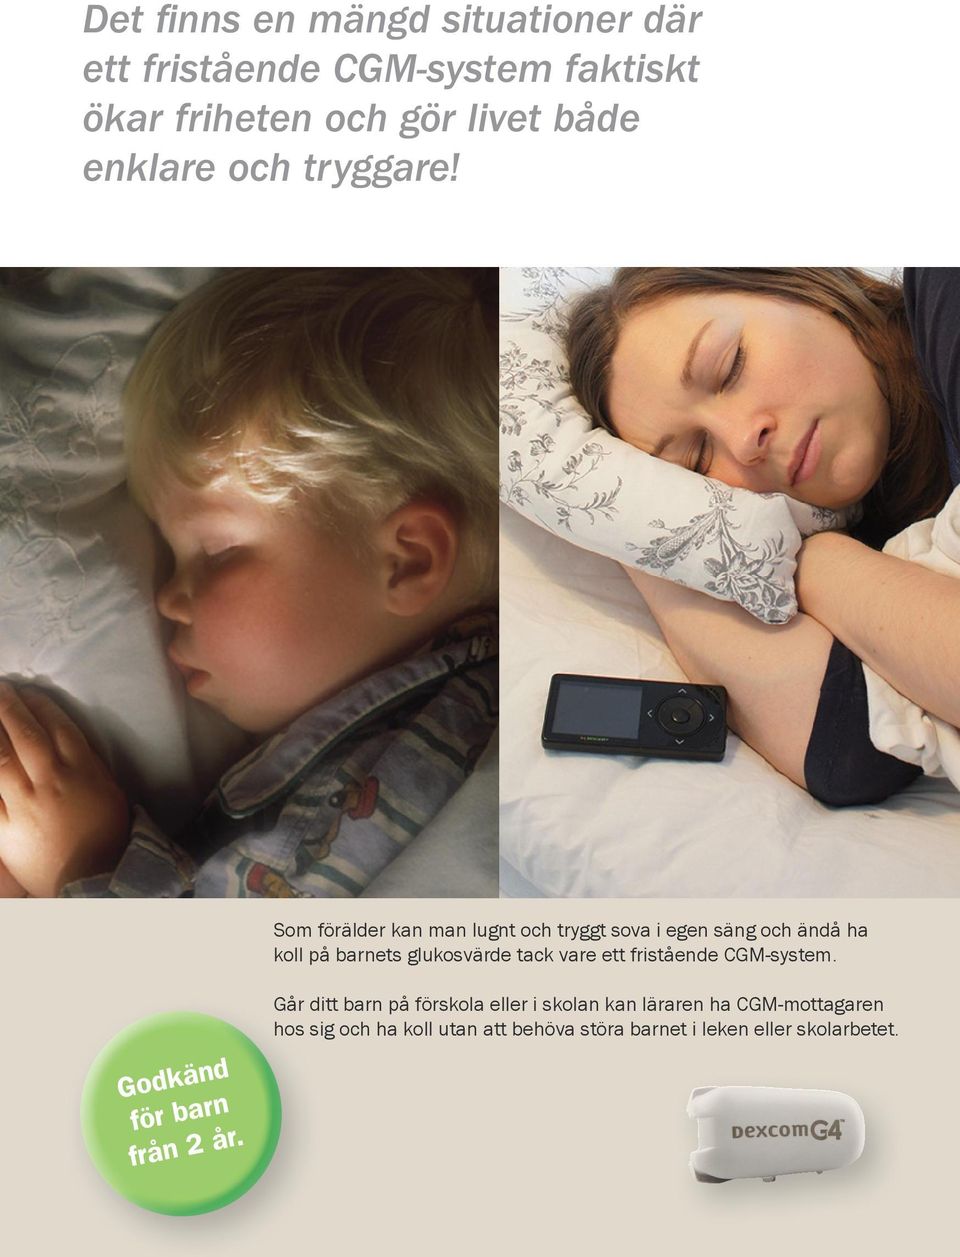 Som förälder kan man lugnt och tryggt sova i egen säng och ändå ha koll på barnets glukosvärde tack vare